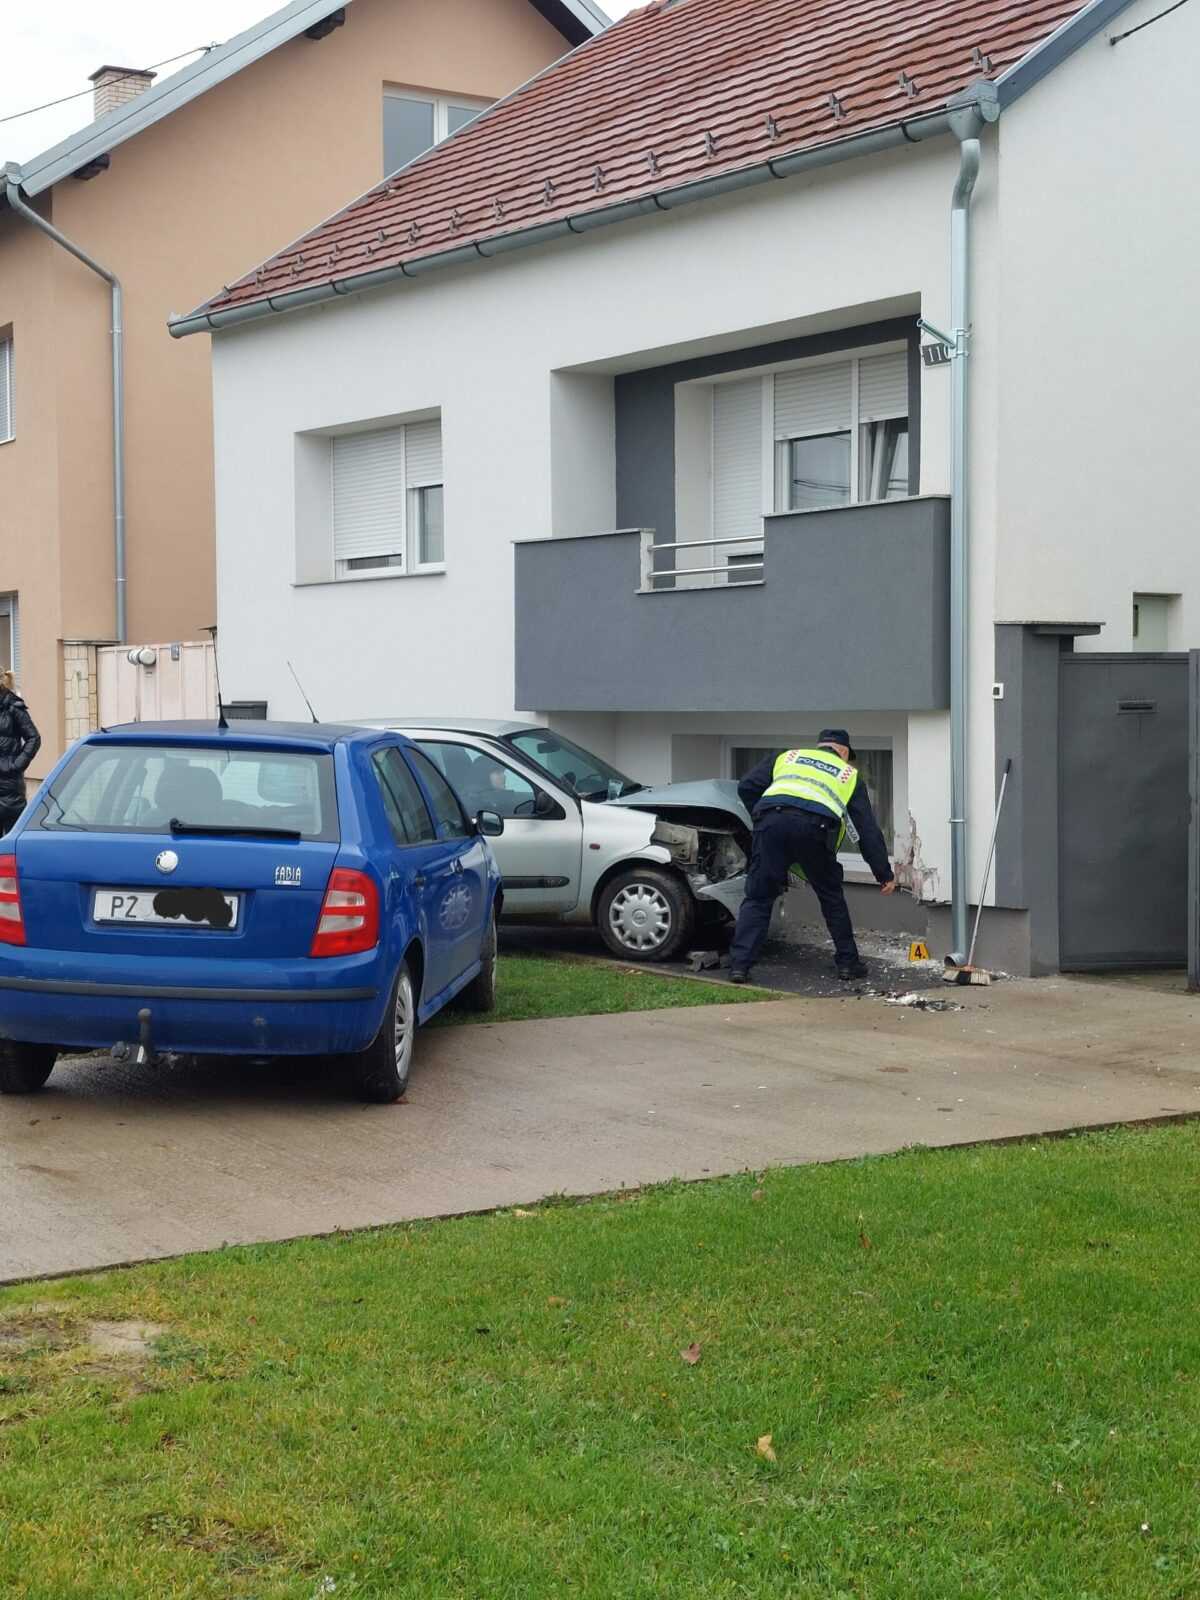 Policija izvijestila o zabijanju automobila u obiteljsku kuću